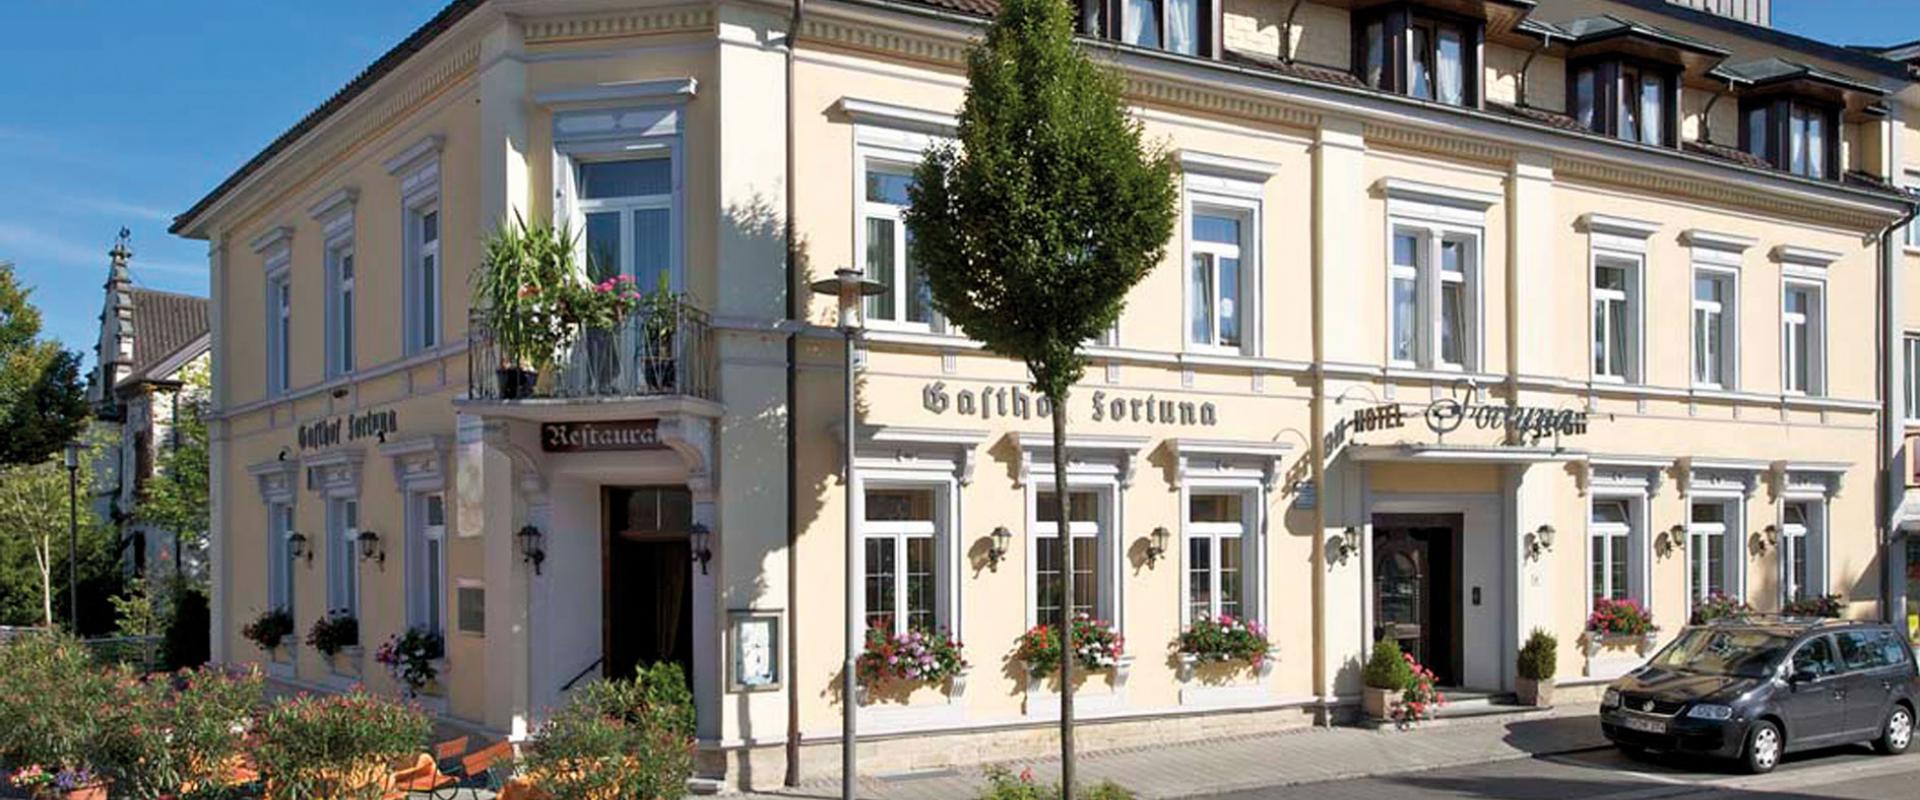 30592 Biker Hotel Fortuna in Schleswig-Holstein.jpg